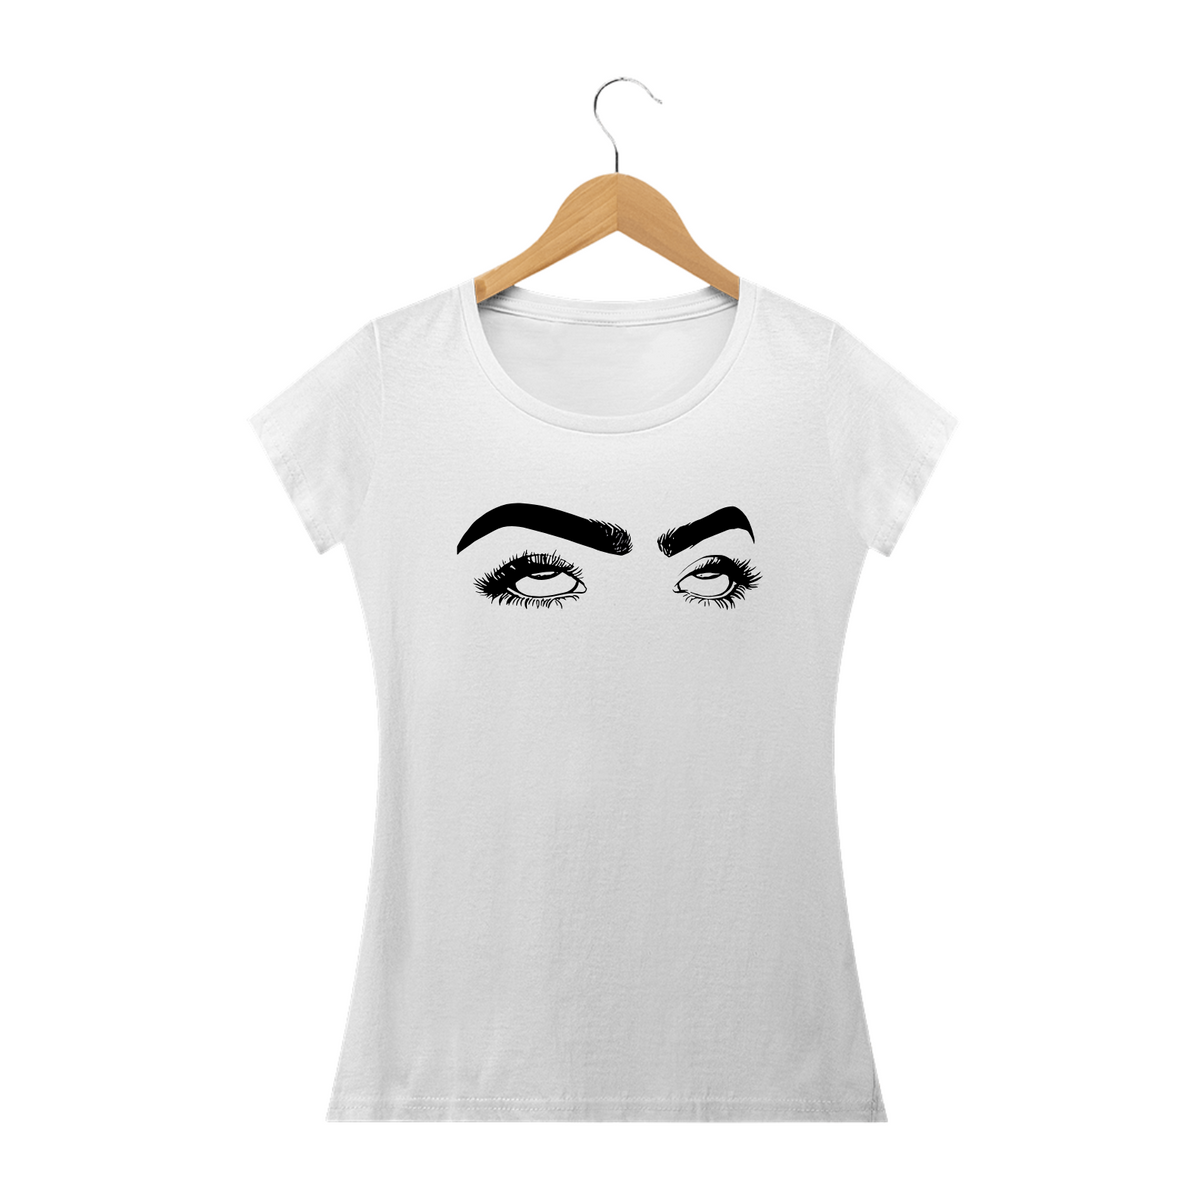 Nome do produto: SEM PACIÊNCIA - Camiseta Feminina Personalizada com Estampa Pop Art